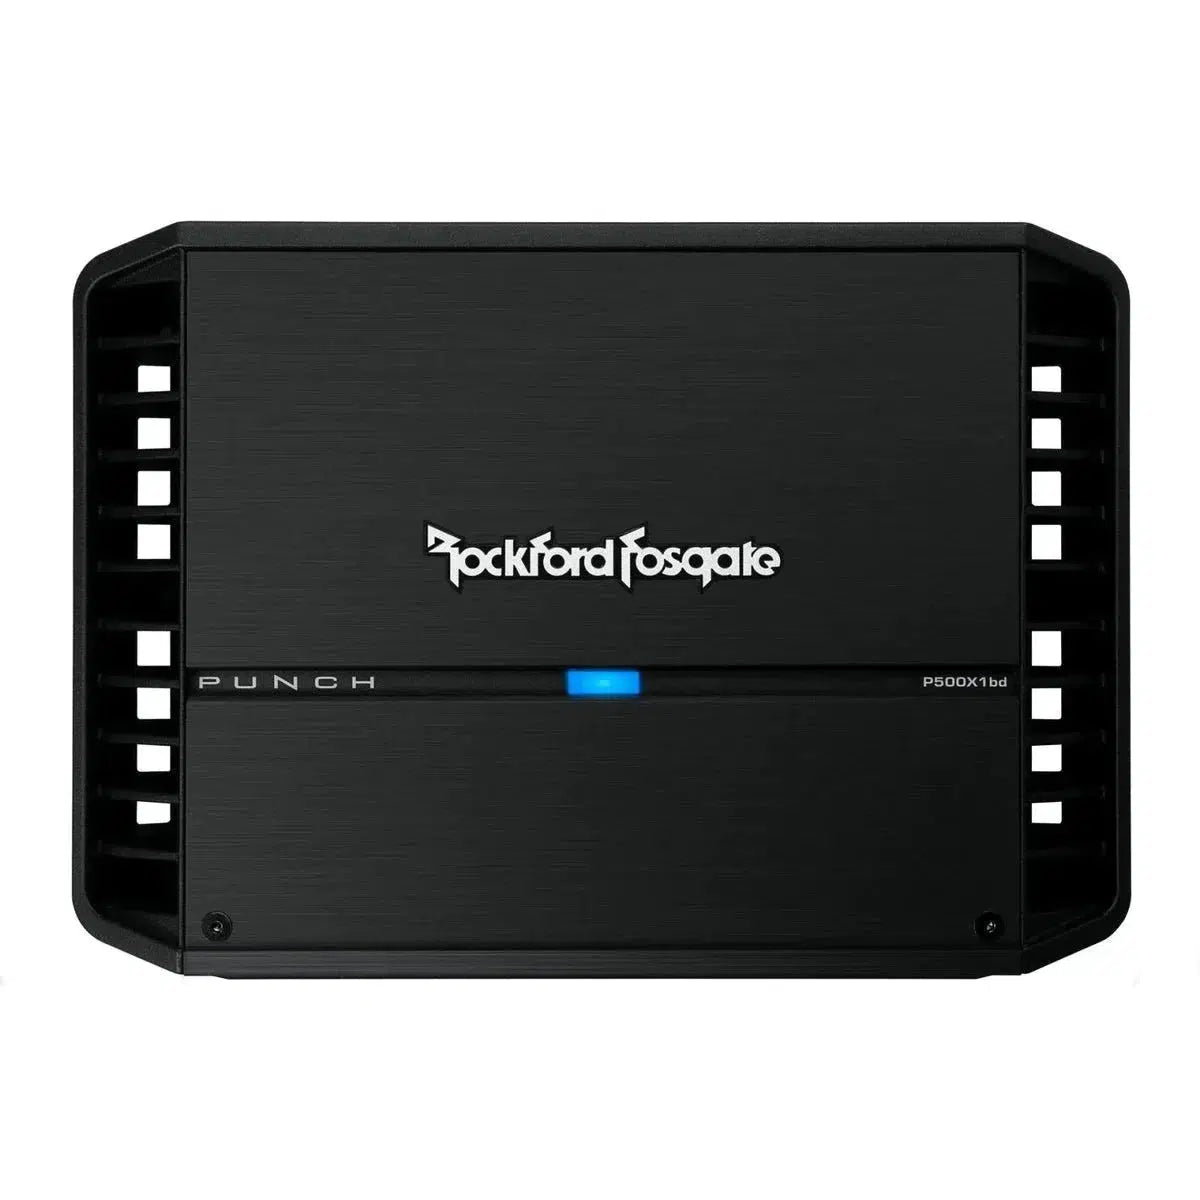 Amplificador de 1 canal Rockford Fosgate-Punch P500X1bd-Masori.de